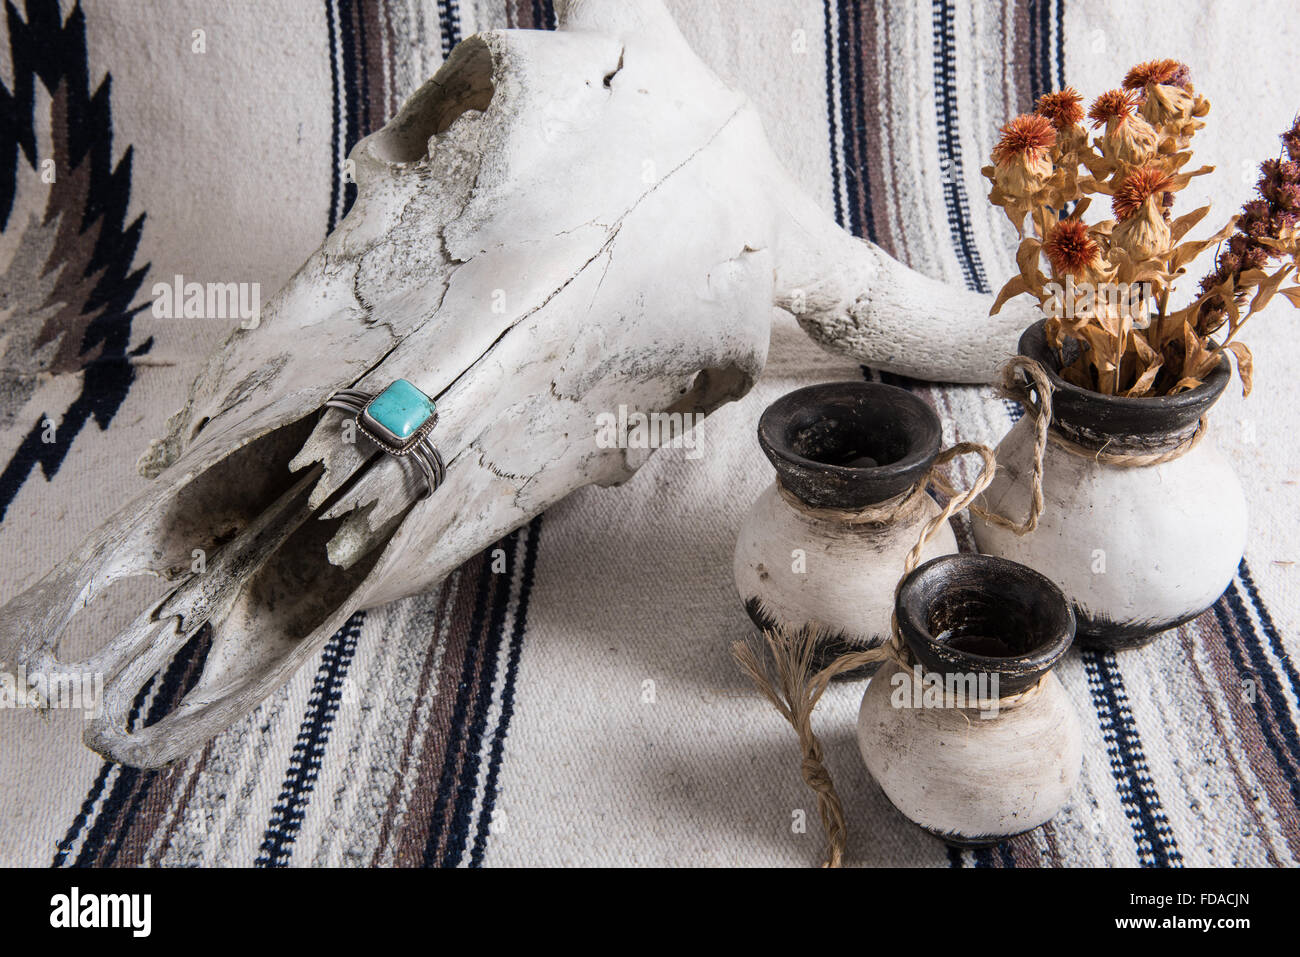 Crâne de vache patiné, bracelet de manchette turquoise et argent, poterie mexicaine peinte en noir et blanc avec fleurs séchées sur une couverture à rayures mexicaines. Banque D'Images